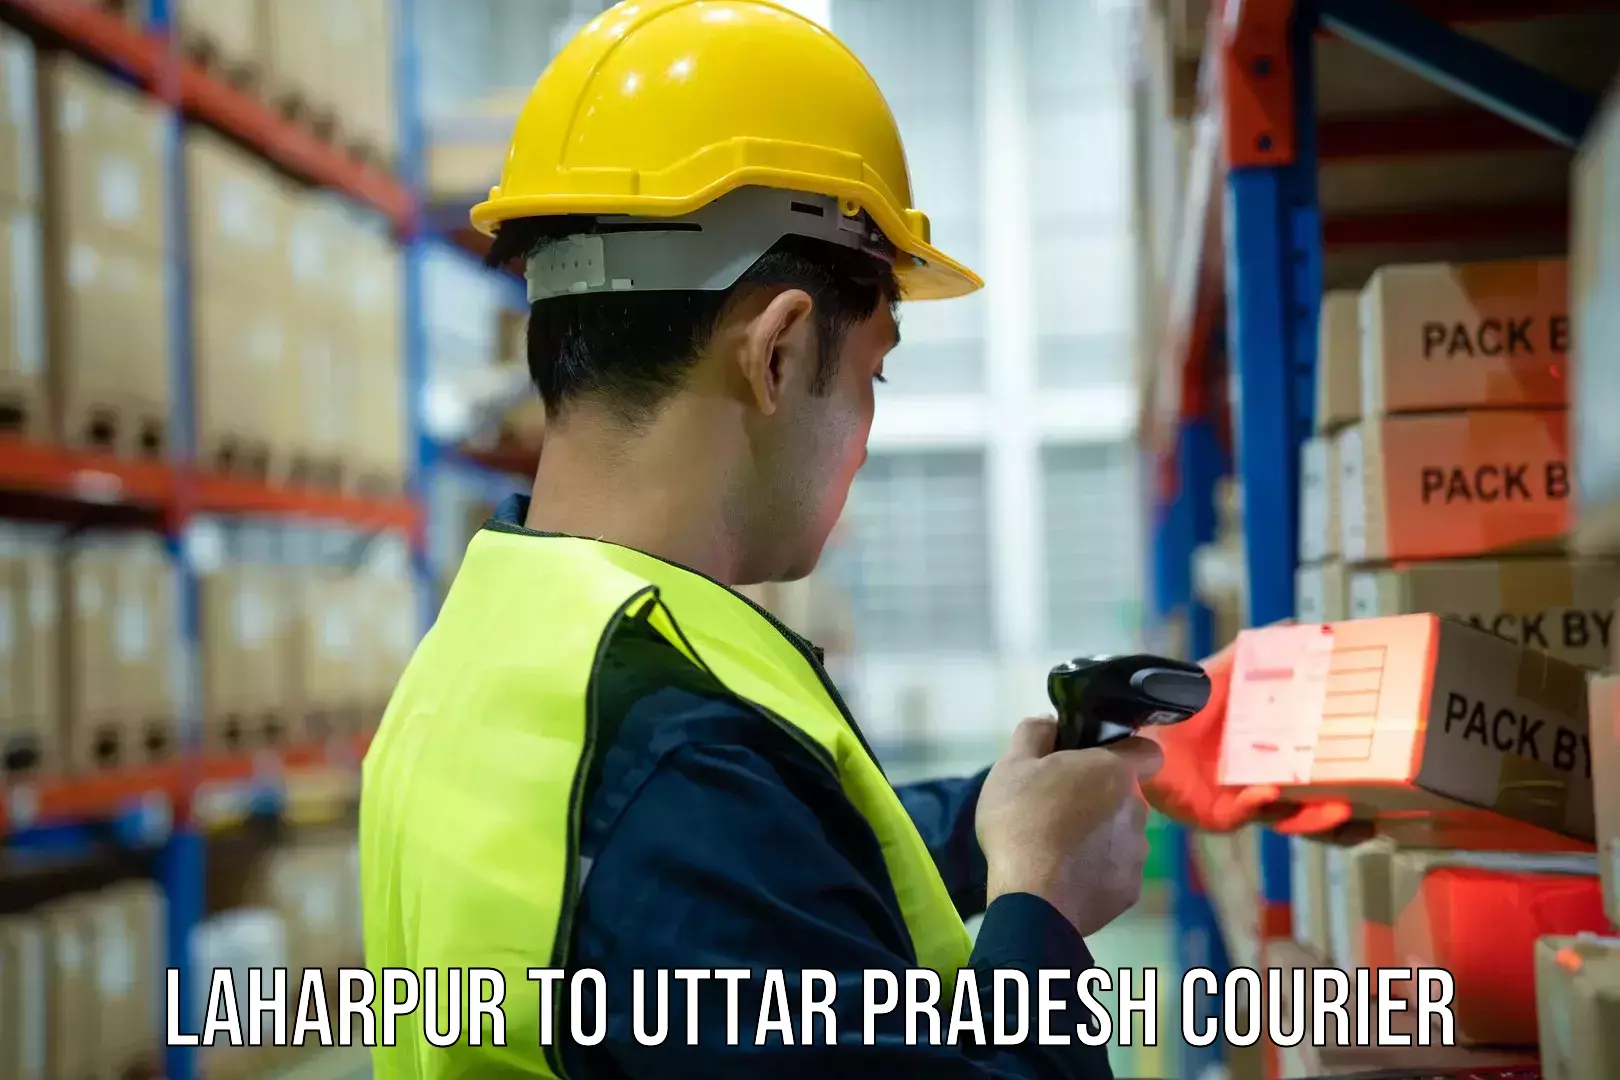 Multi-service courier options Laharpur to Uttar Pradesh